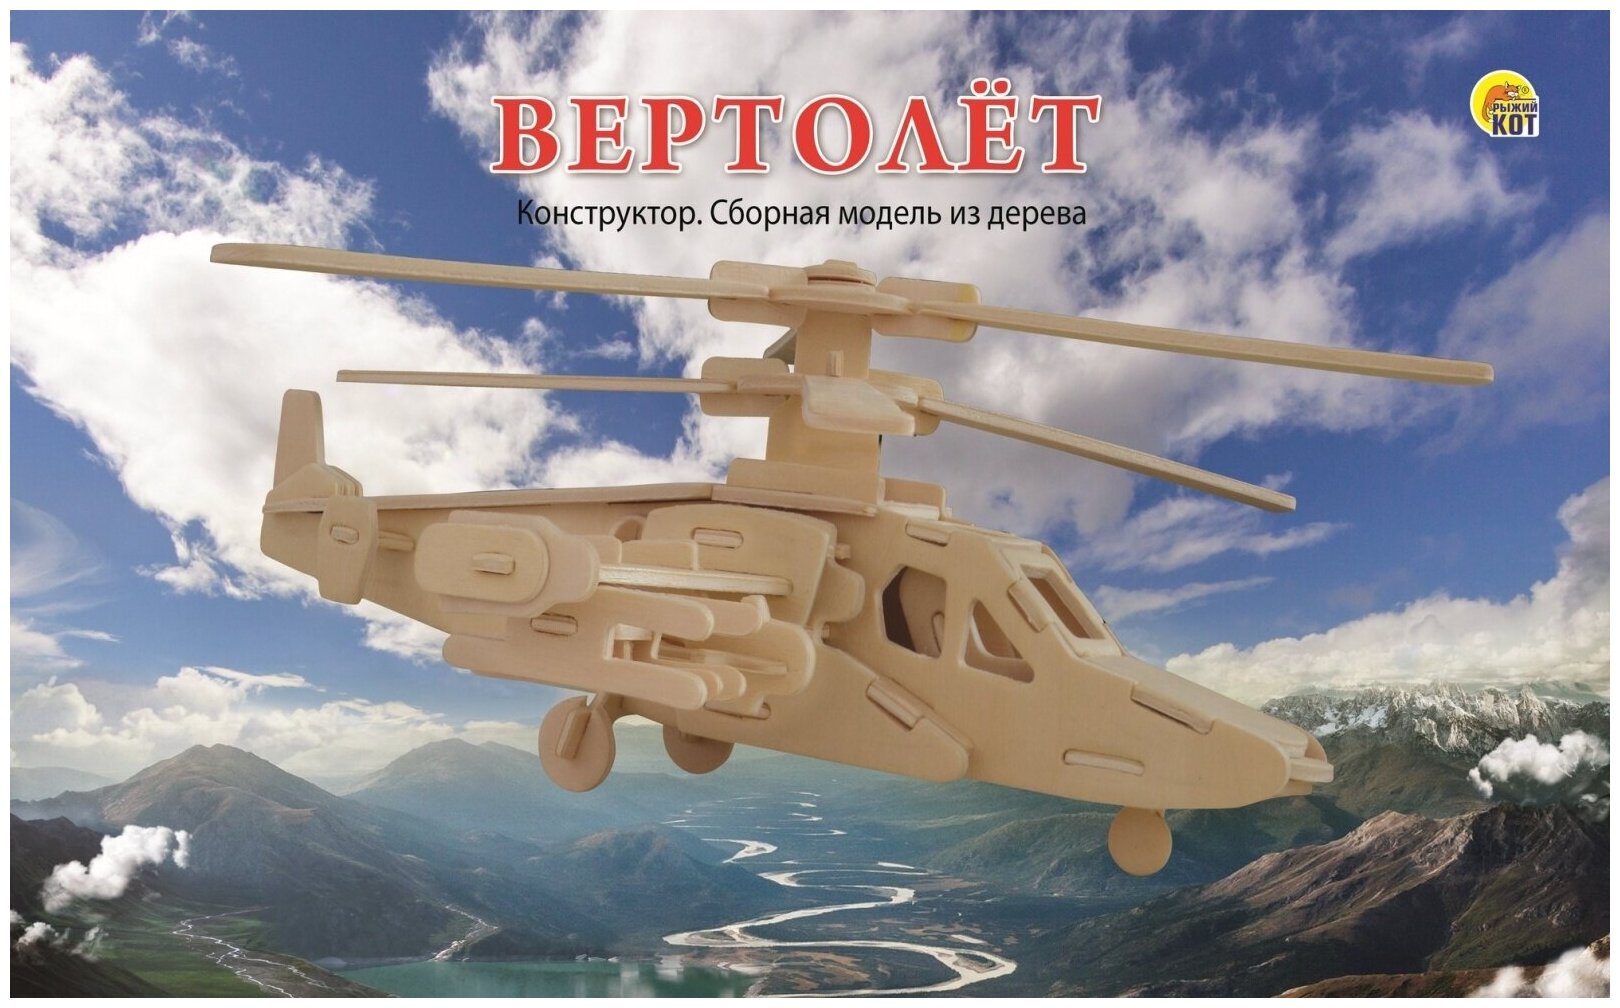 Сборная модель из дерева Рыжий кот Вертолет, 2 листа (СМ-1002-А4)